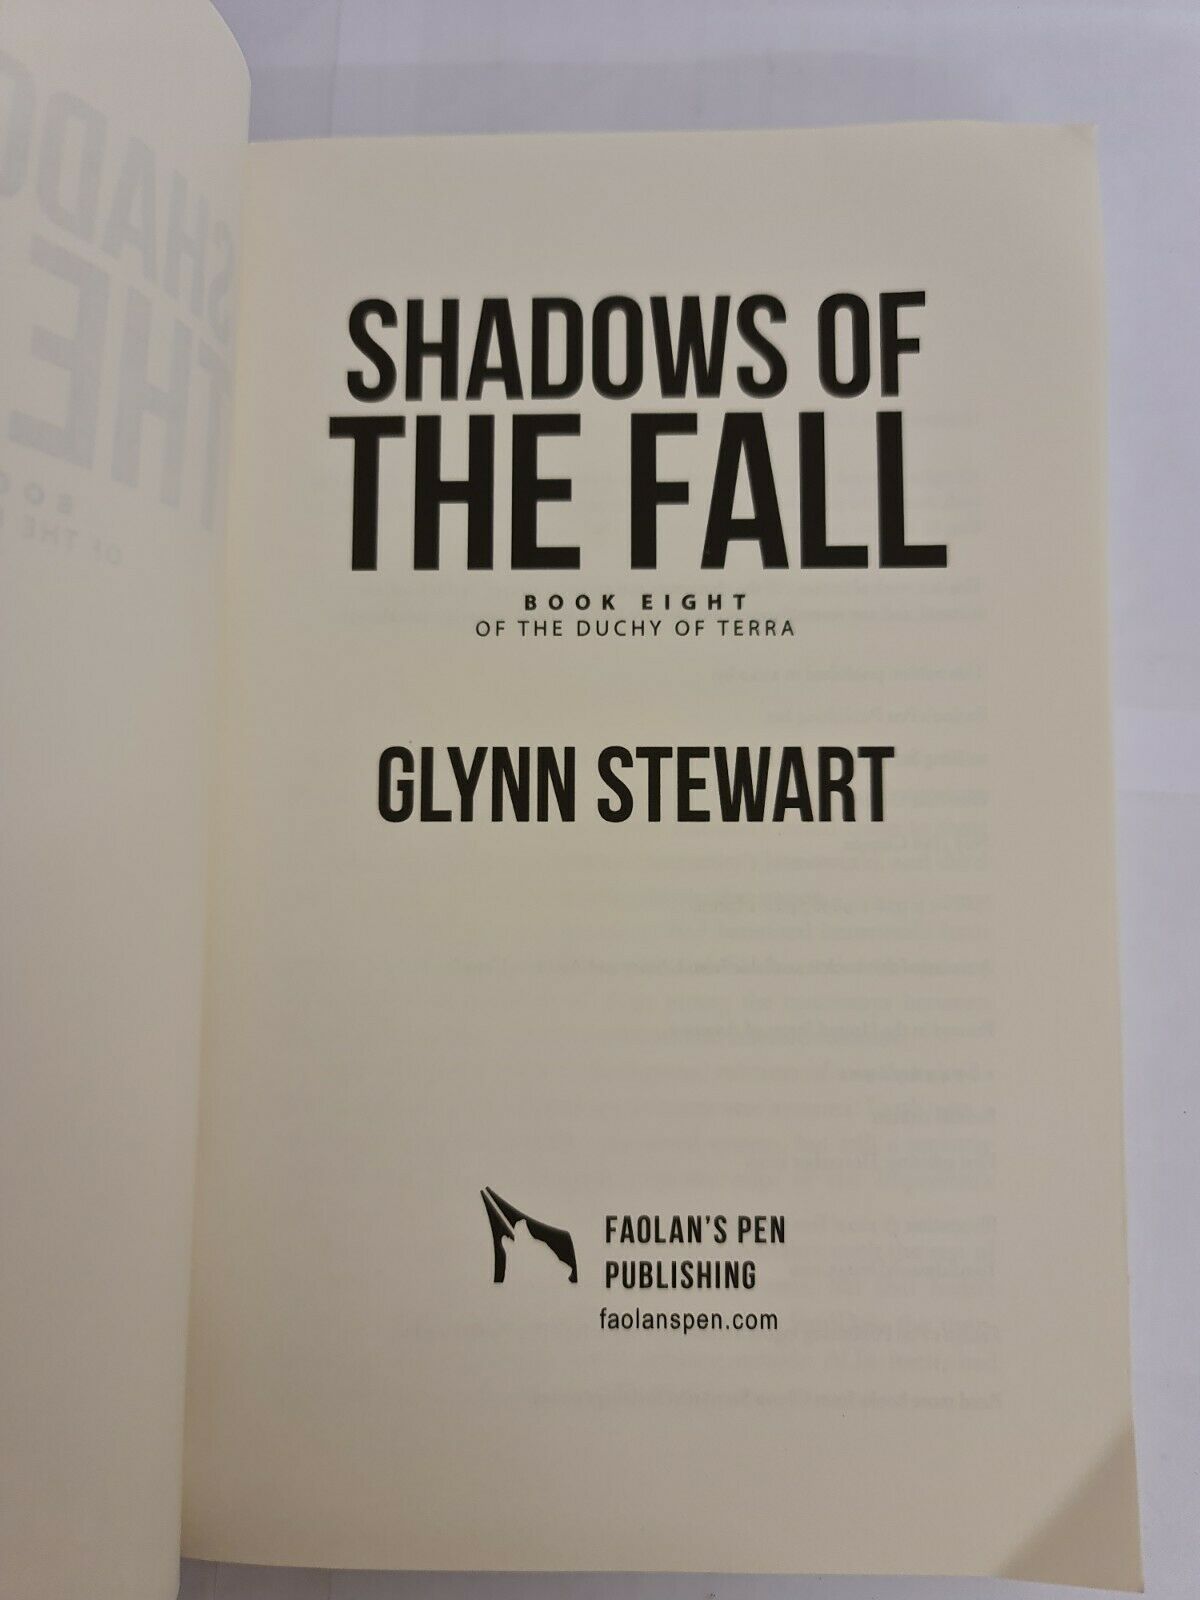 Shadows of the Fall by Glynn Stewart